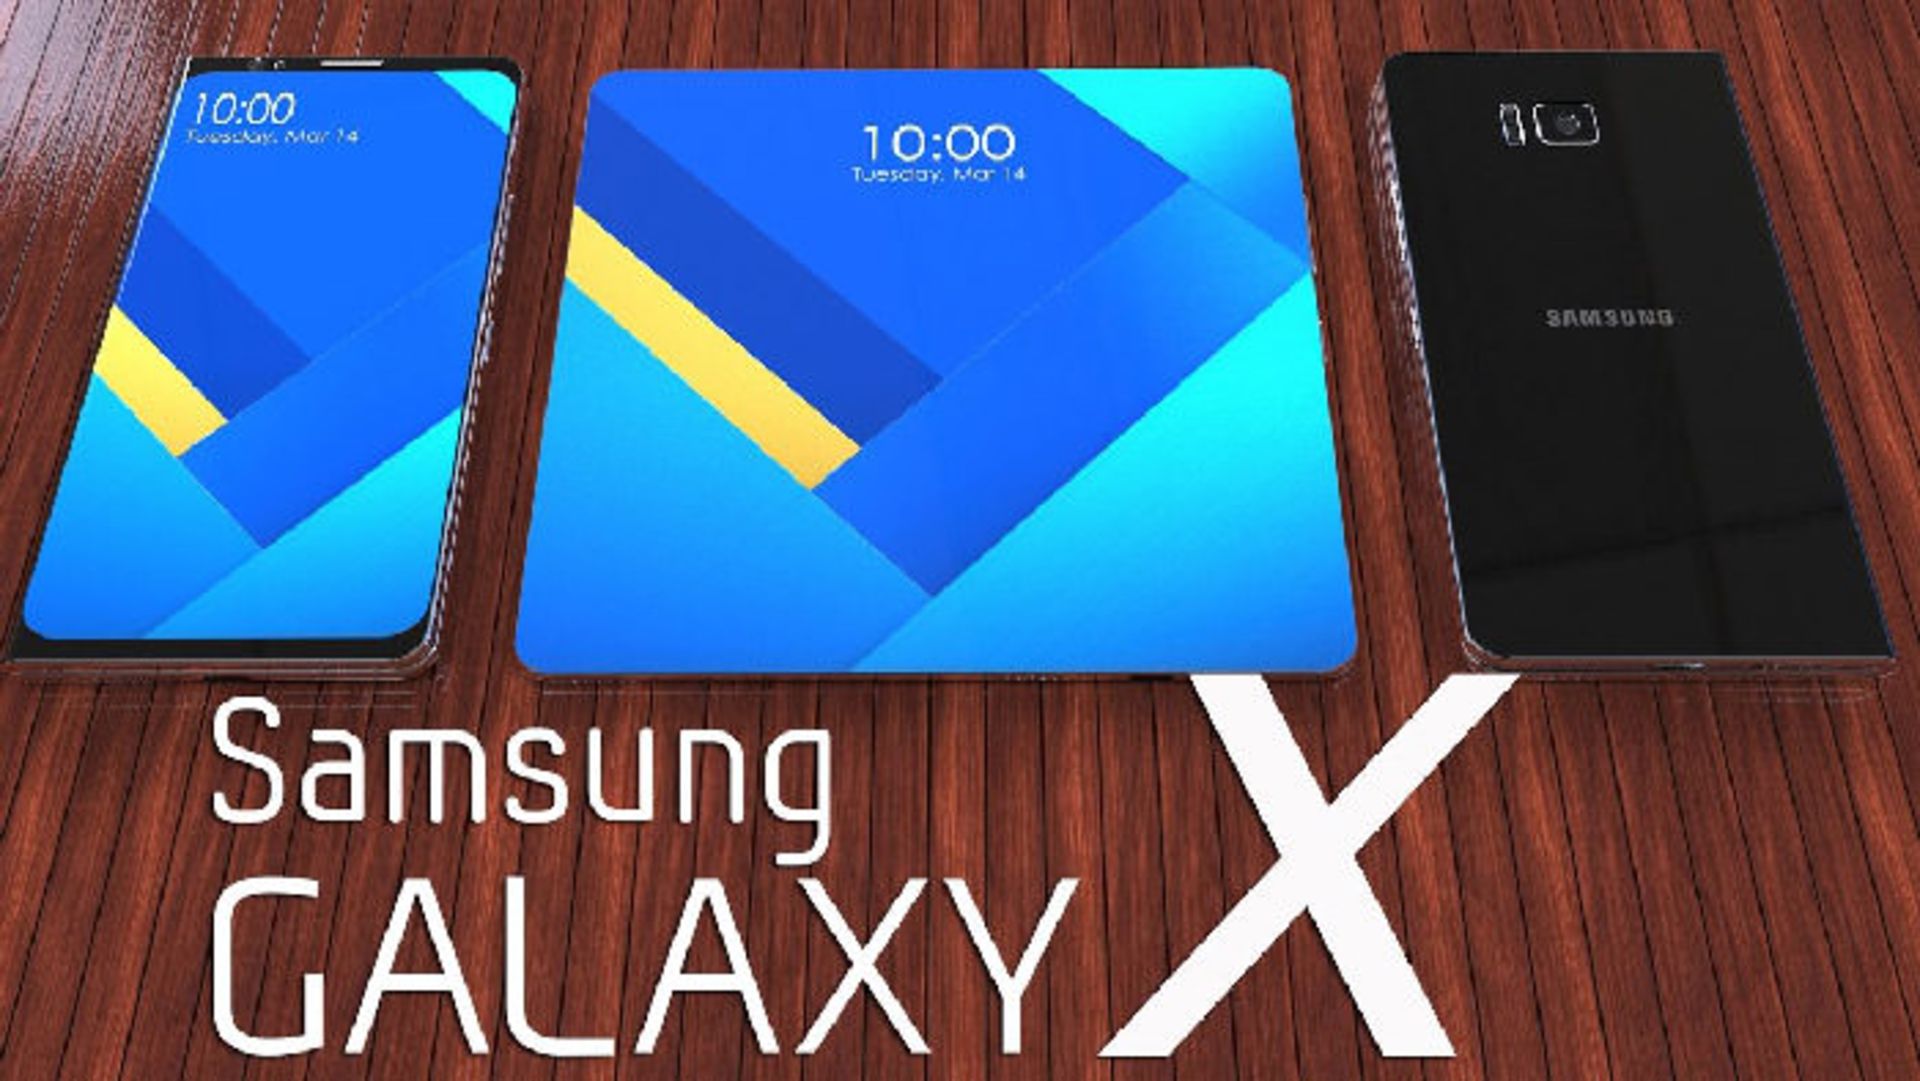 سامسونگ گلکسی ایکس/ Samsung Galaxy X